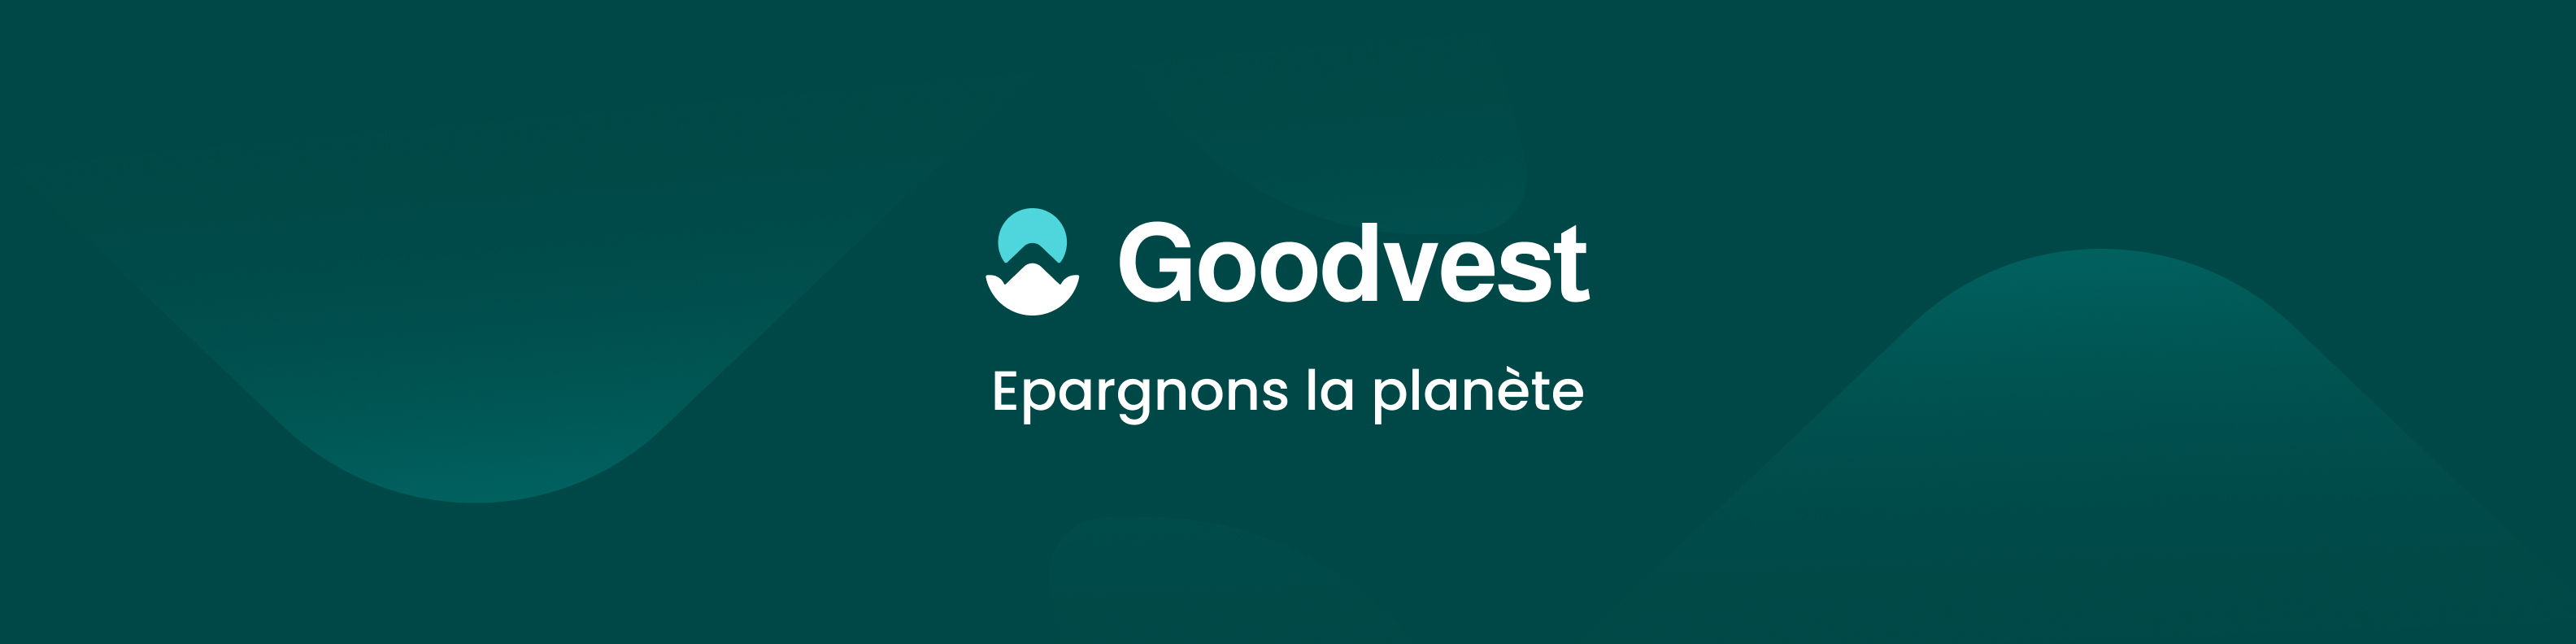 Bannière de Goodvest